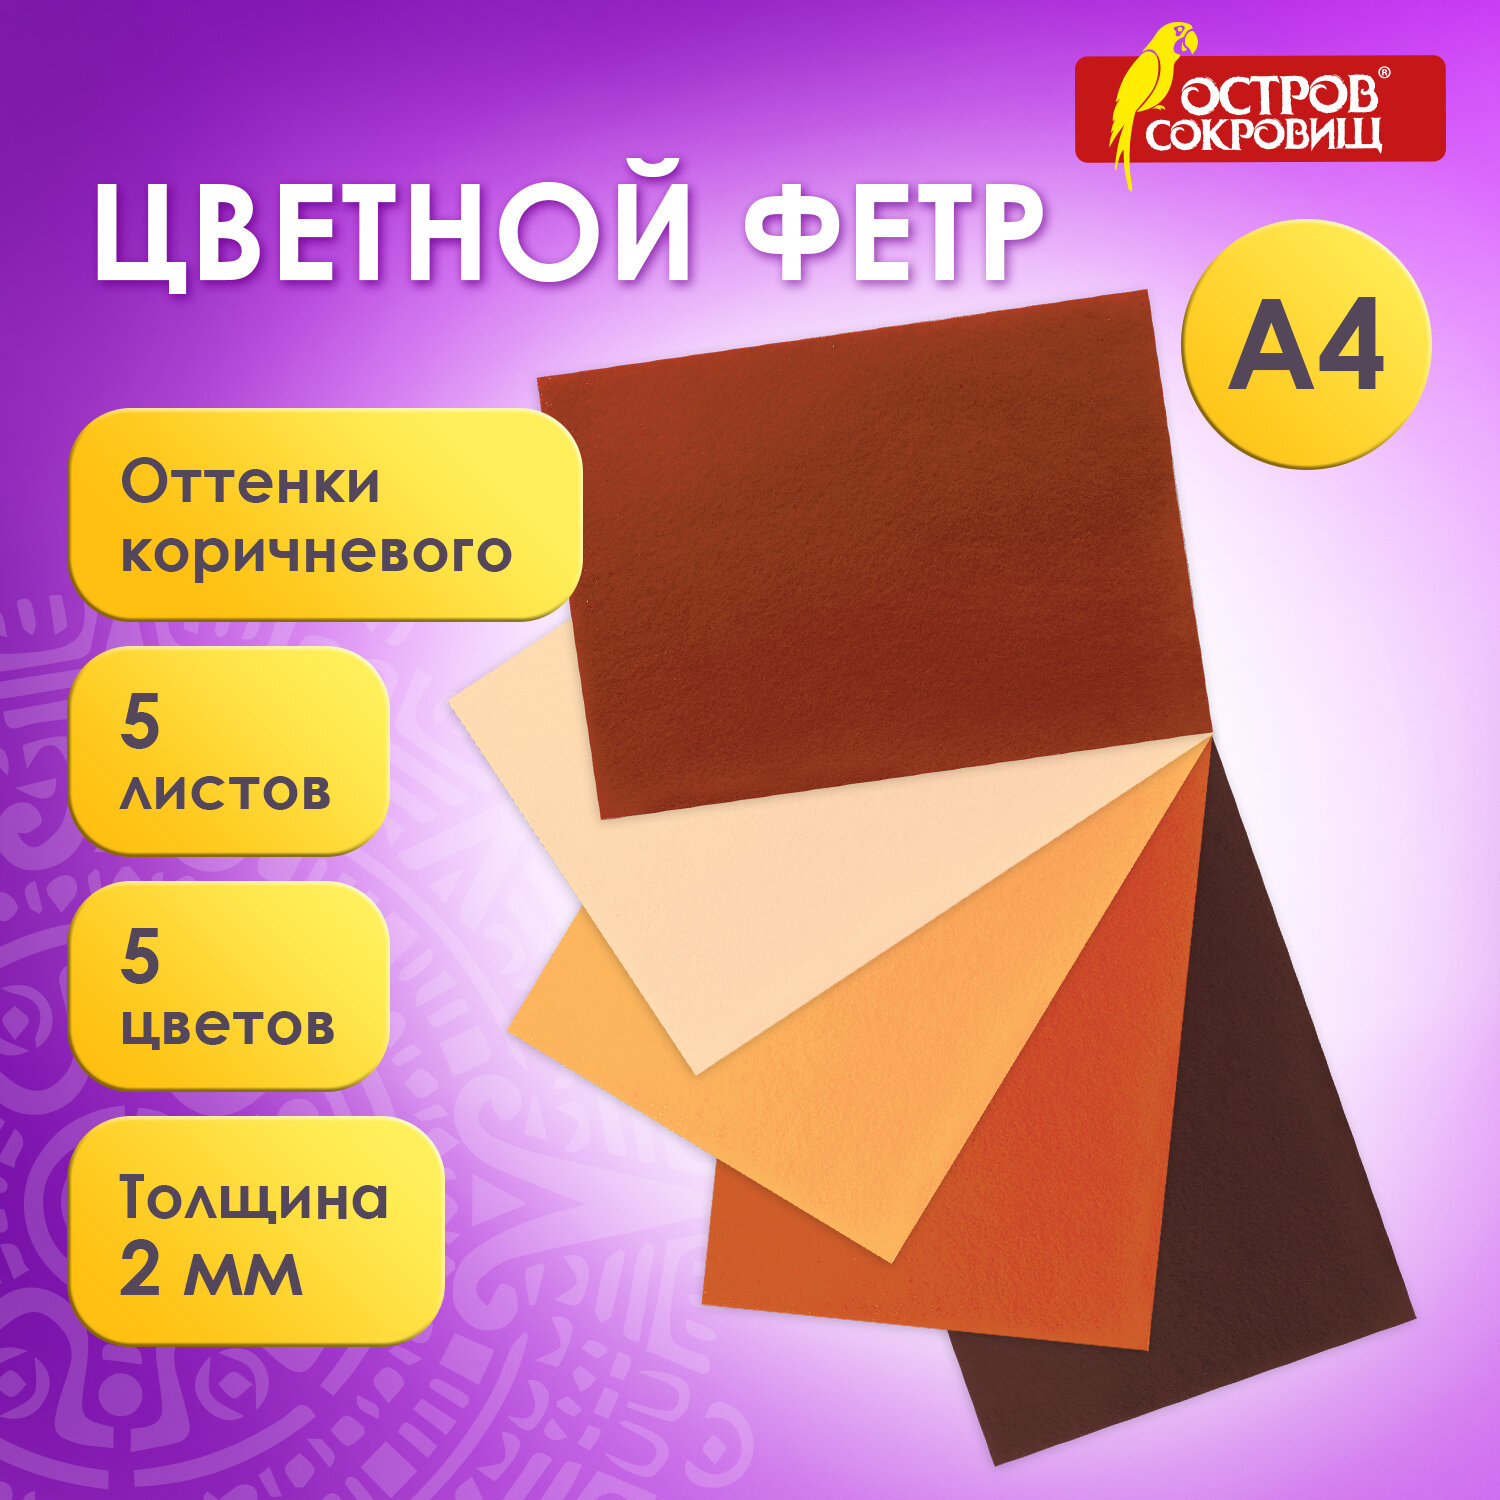 ОСТРОВ СОКРОВИЩ Цветной ОСТРОВ СОКРОВИЩ 660646, комплект 5 шт.